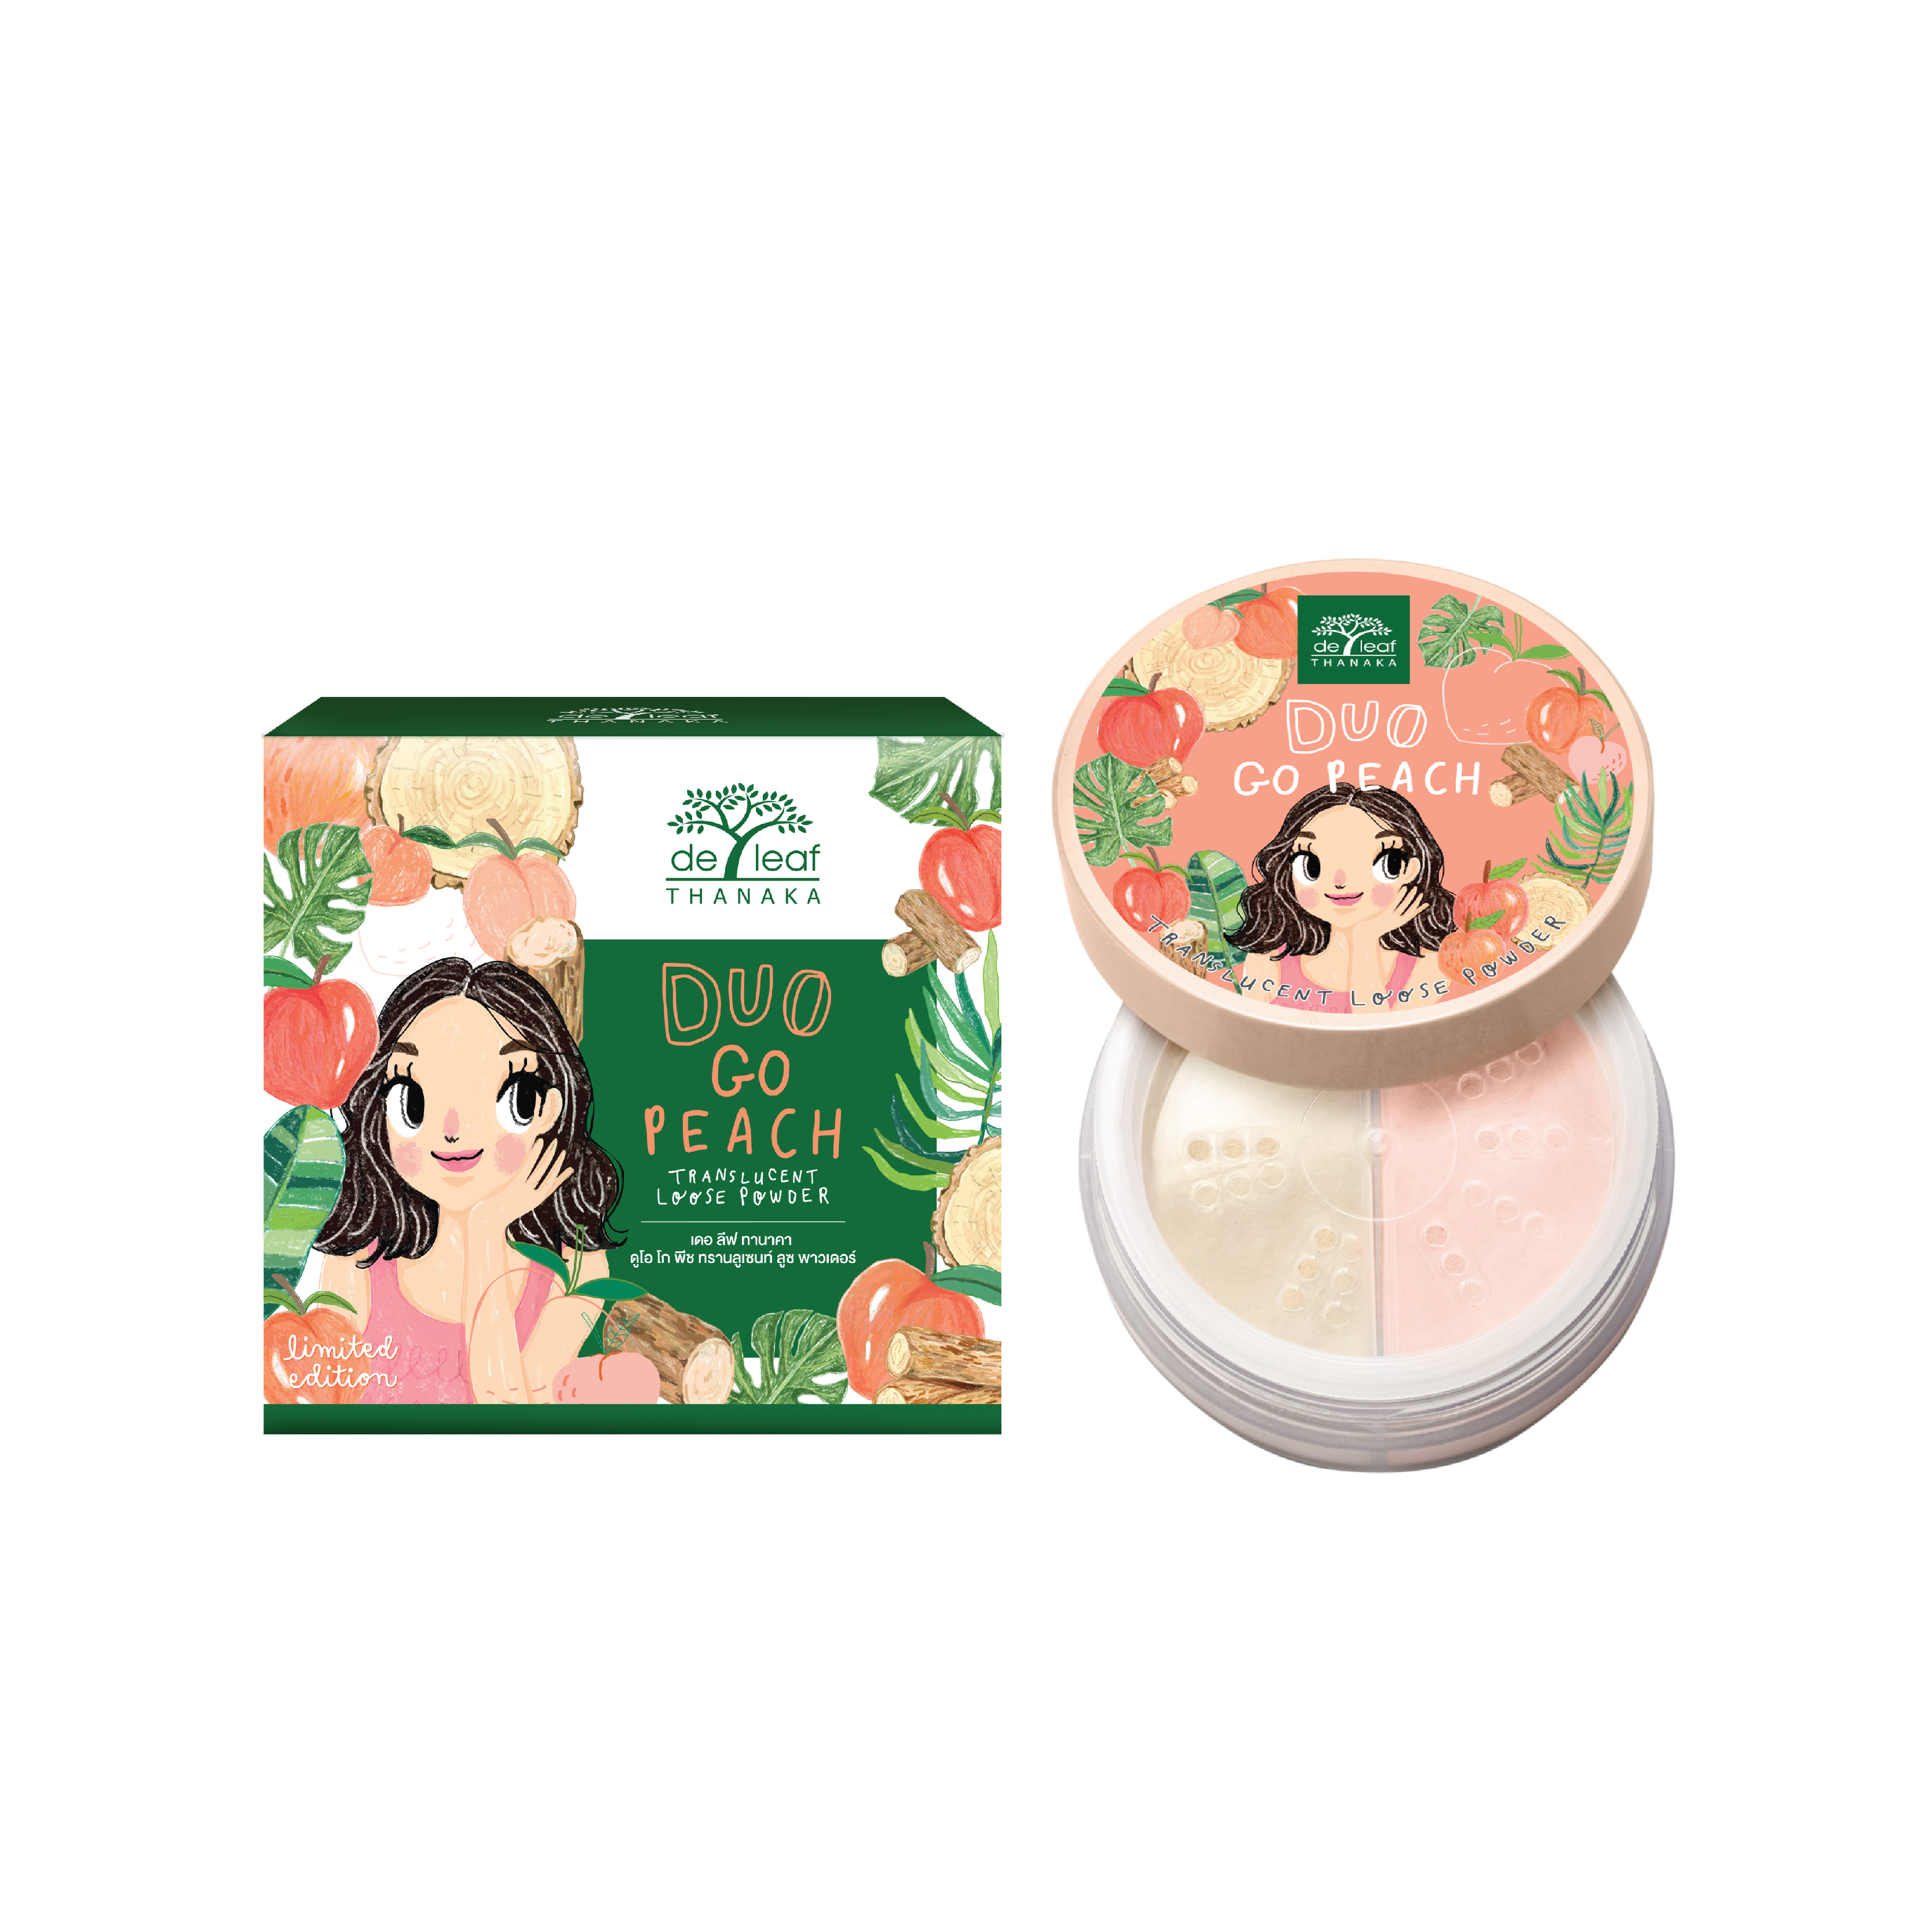 De Leaf Thanaka Duo Go Peach Translucent Loose Powder